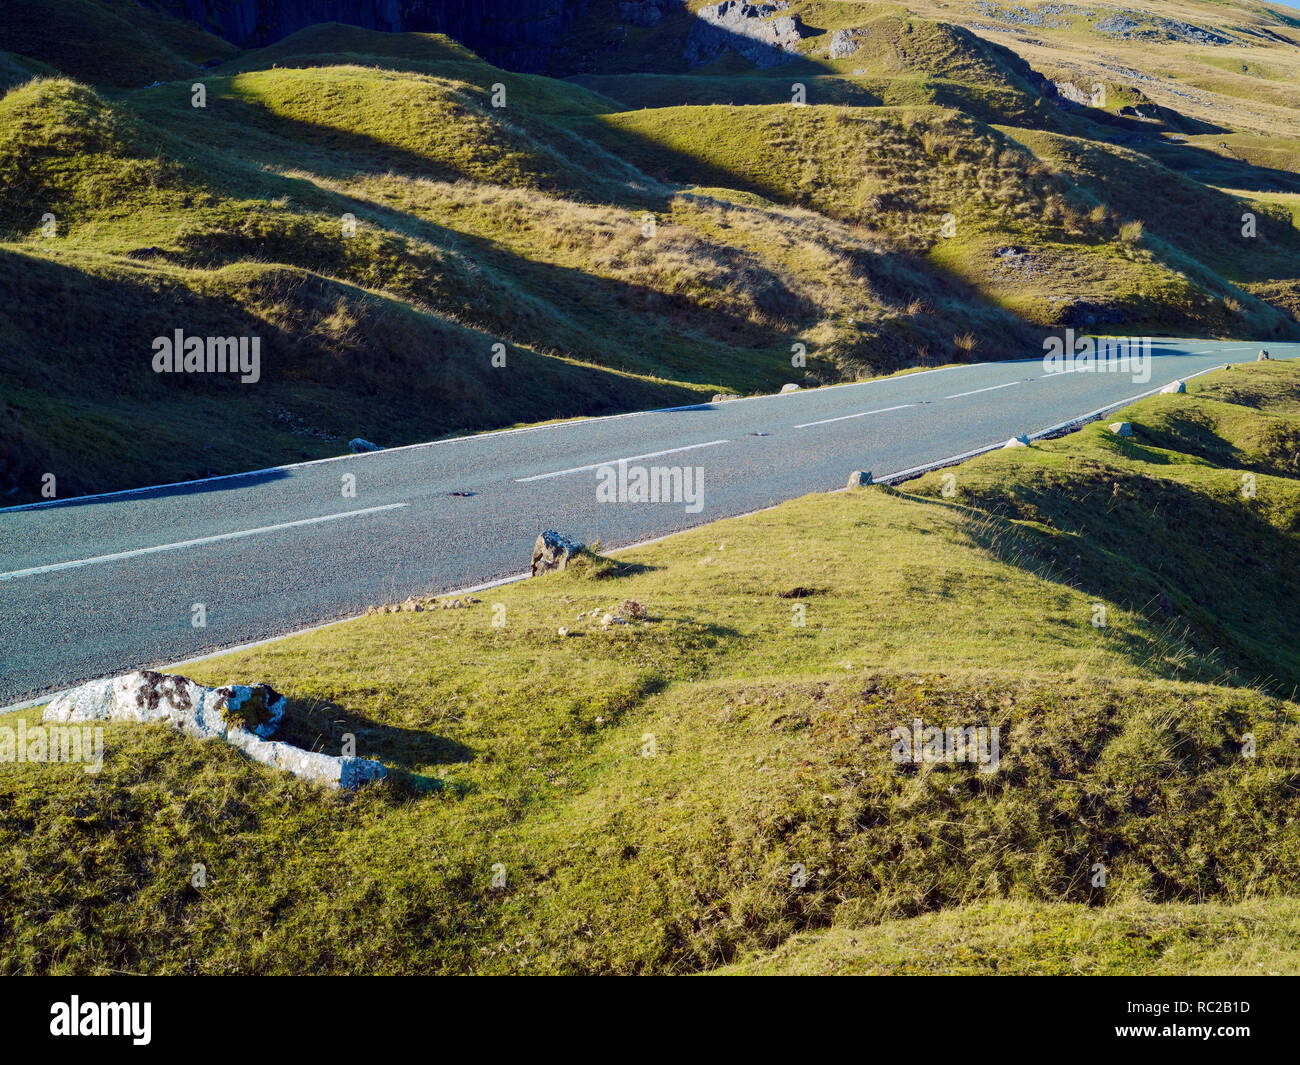 Una tranquila carretera disecciona el paisaje montañoso del Parque Nacional de Brecon Beacons. Foto de stock